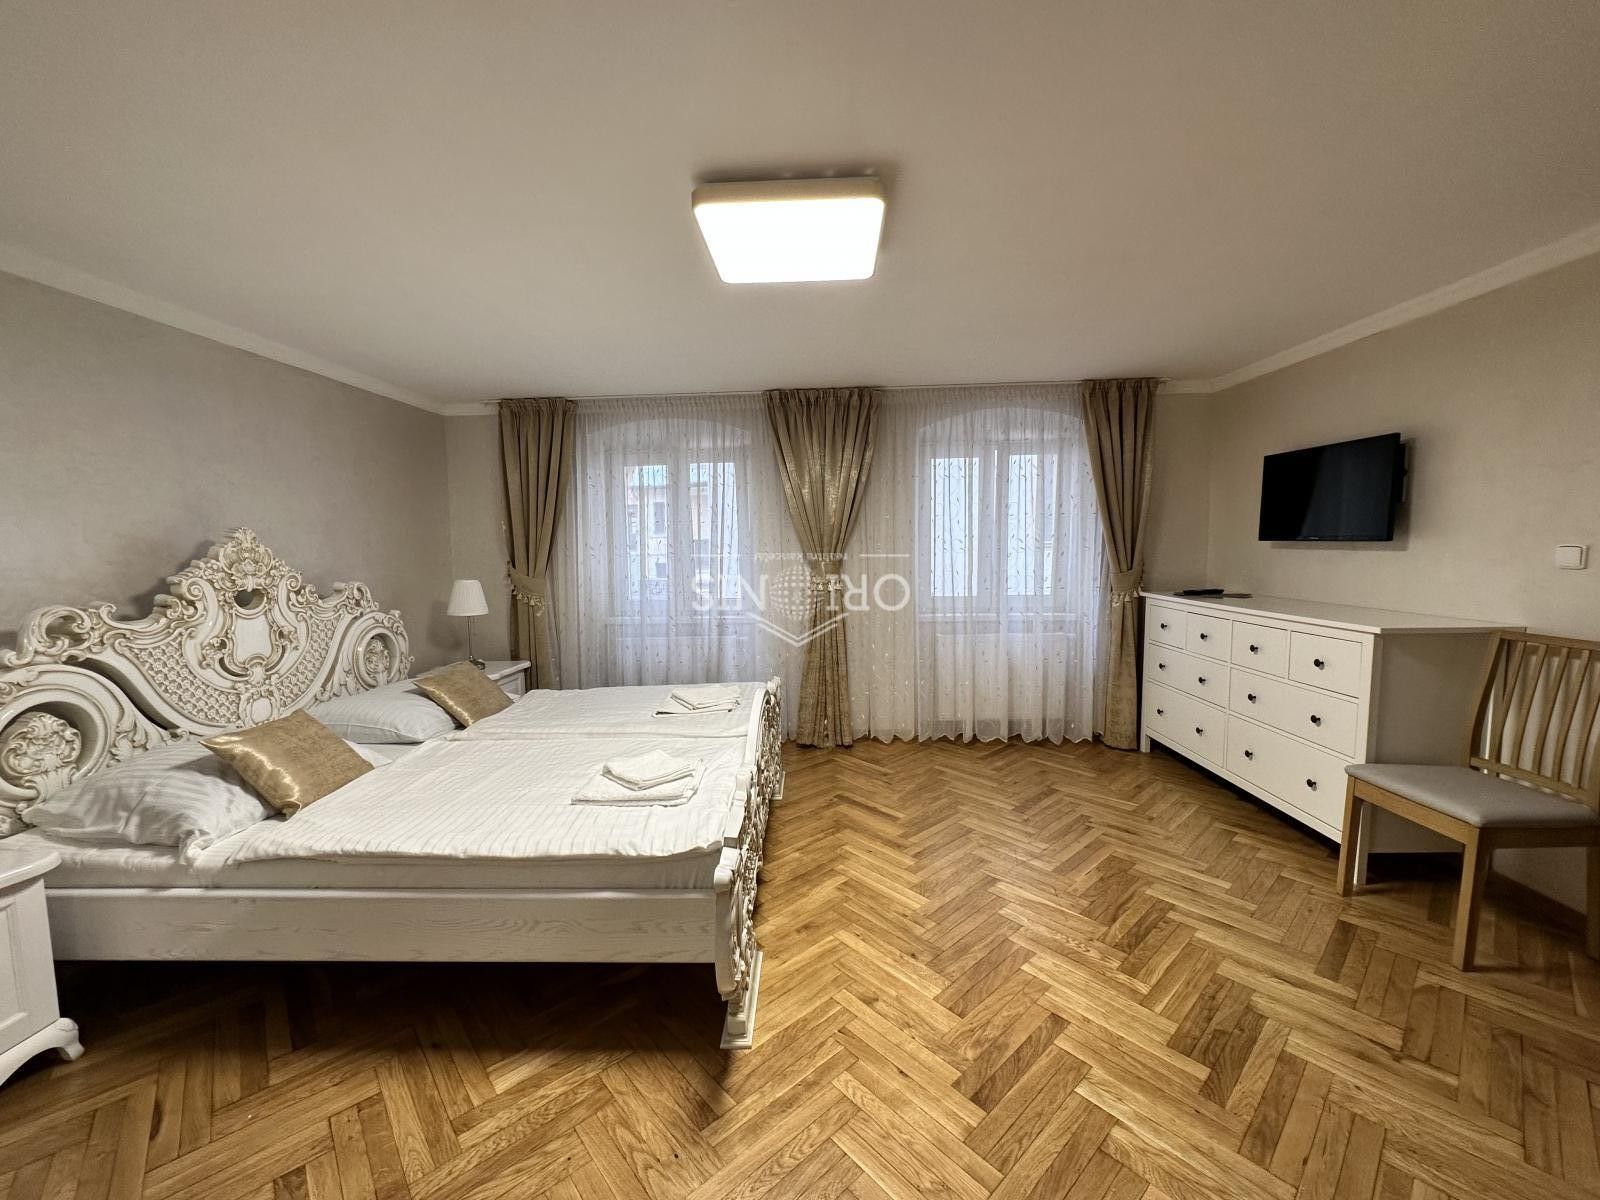 Ubytovací zařízení, Zámecký vrch, Karlovy Vary, 400 m²